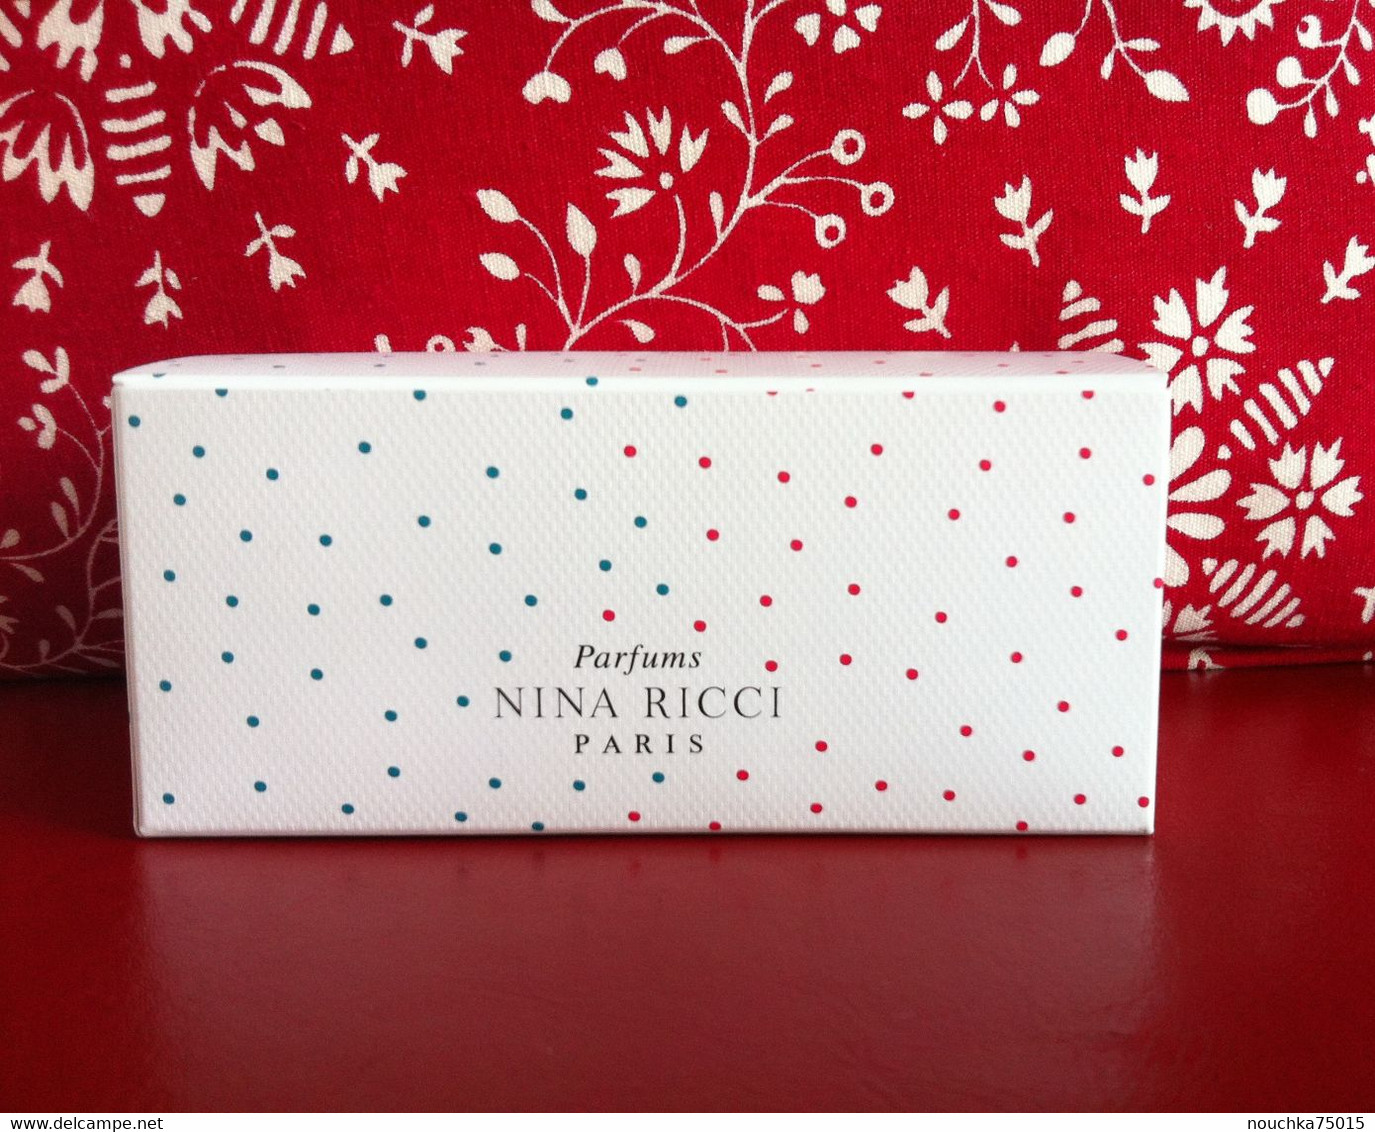 Nina Ricci - Les Gourmandises De Nina Et Luna - Beauty Products